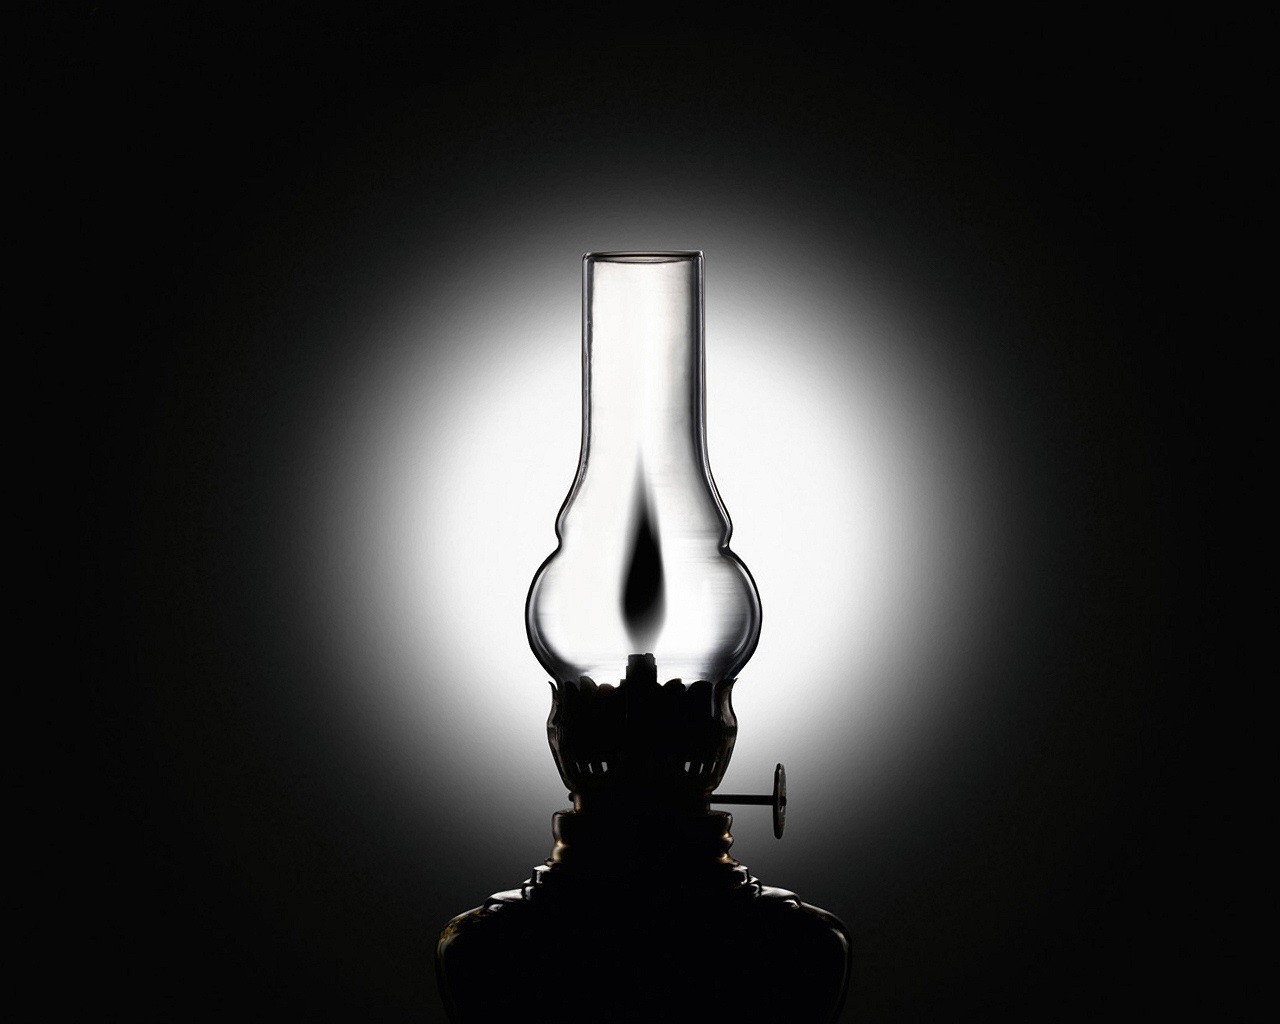 light kerosene stove black and white